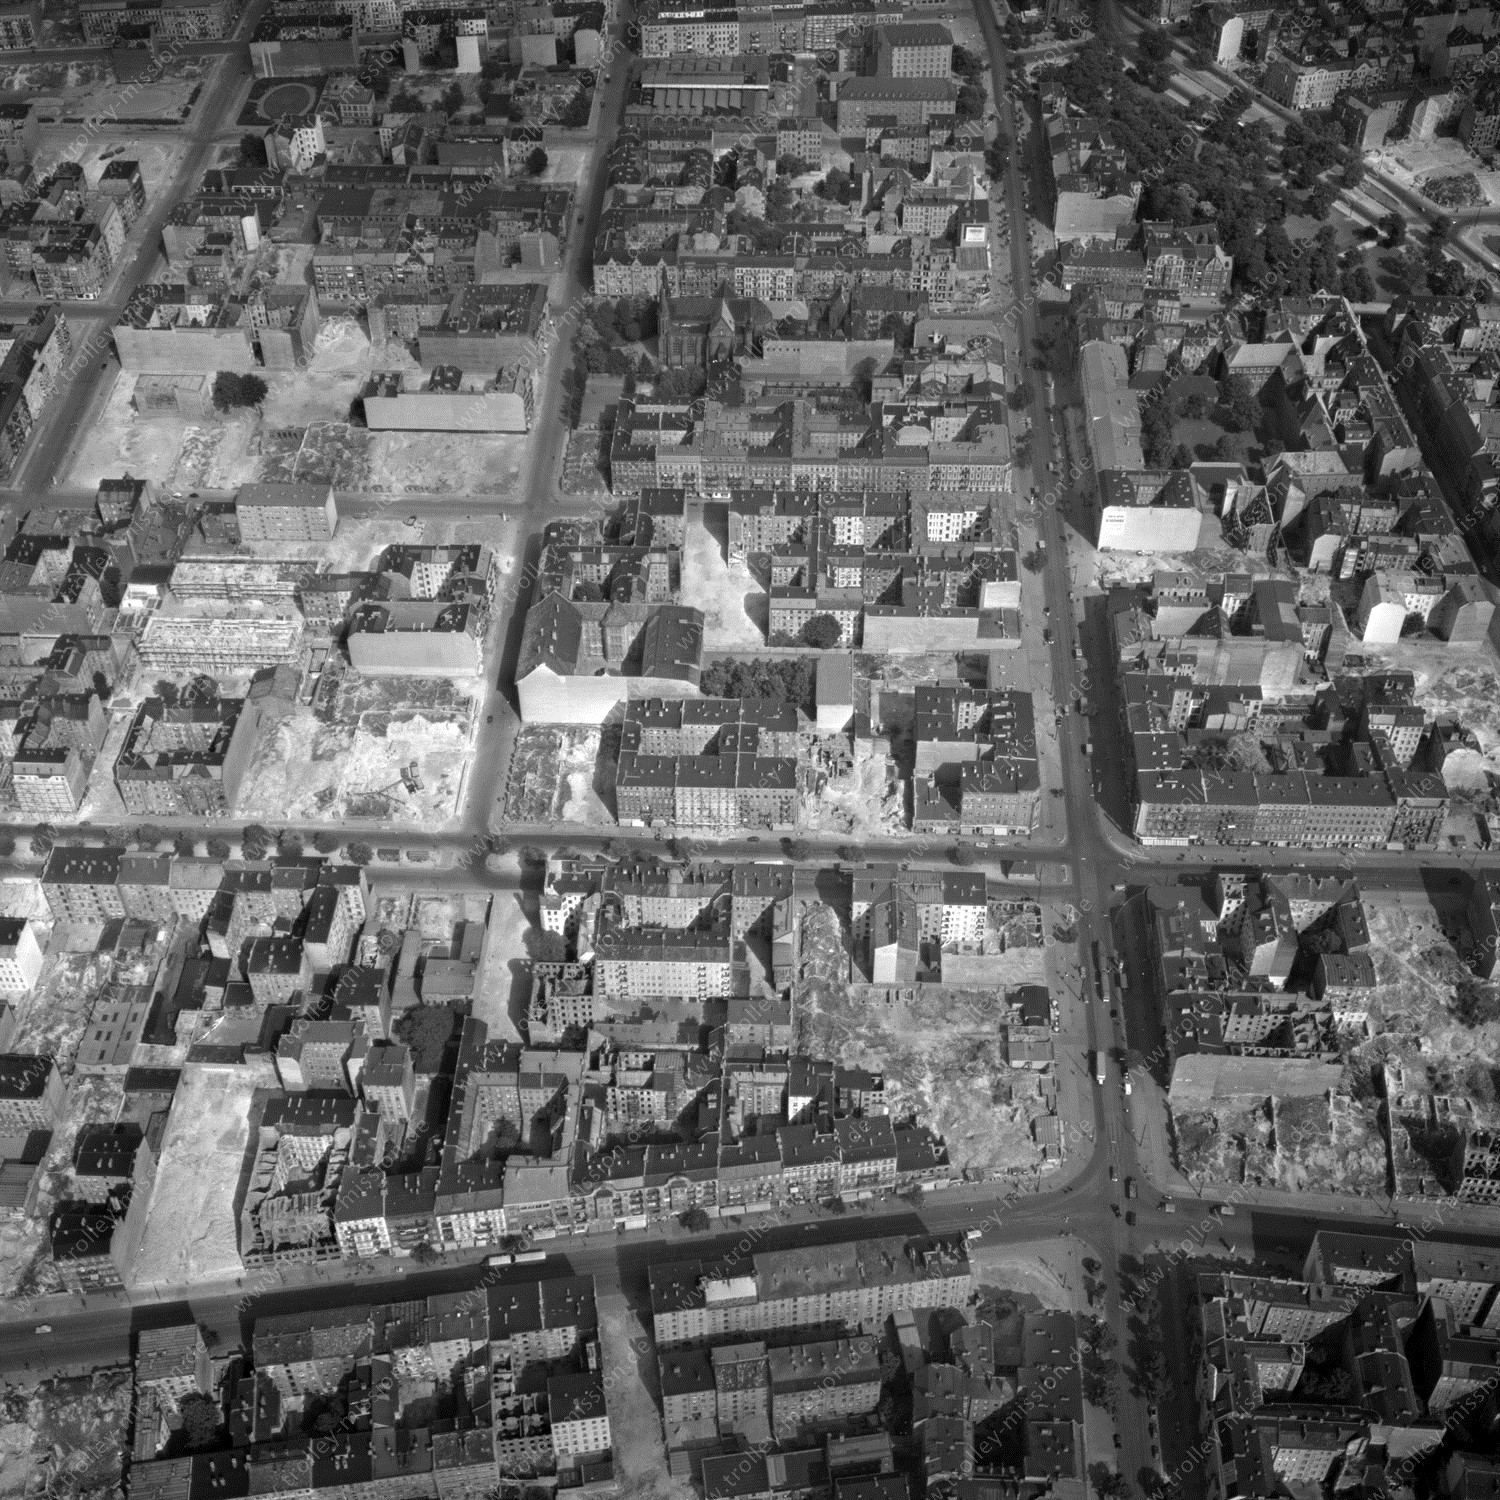 Alte Fotos und Luftbilder von Berlin - Luftbildaufnahme Nr. 09 - Historische Luftaufnahmen von West-Berlin aus dem Jahr 1954 - Flugstrecke Uniform